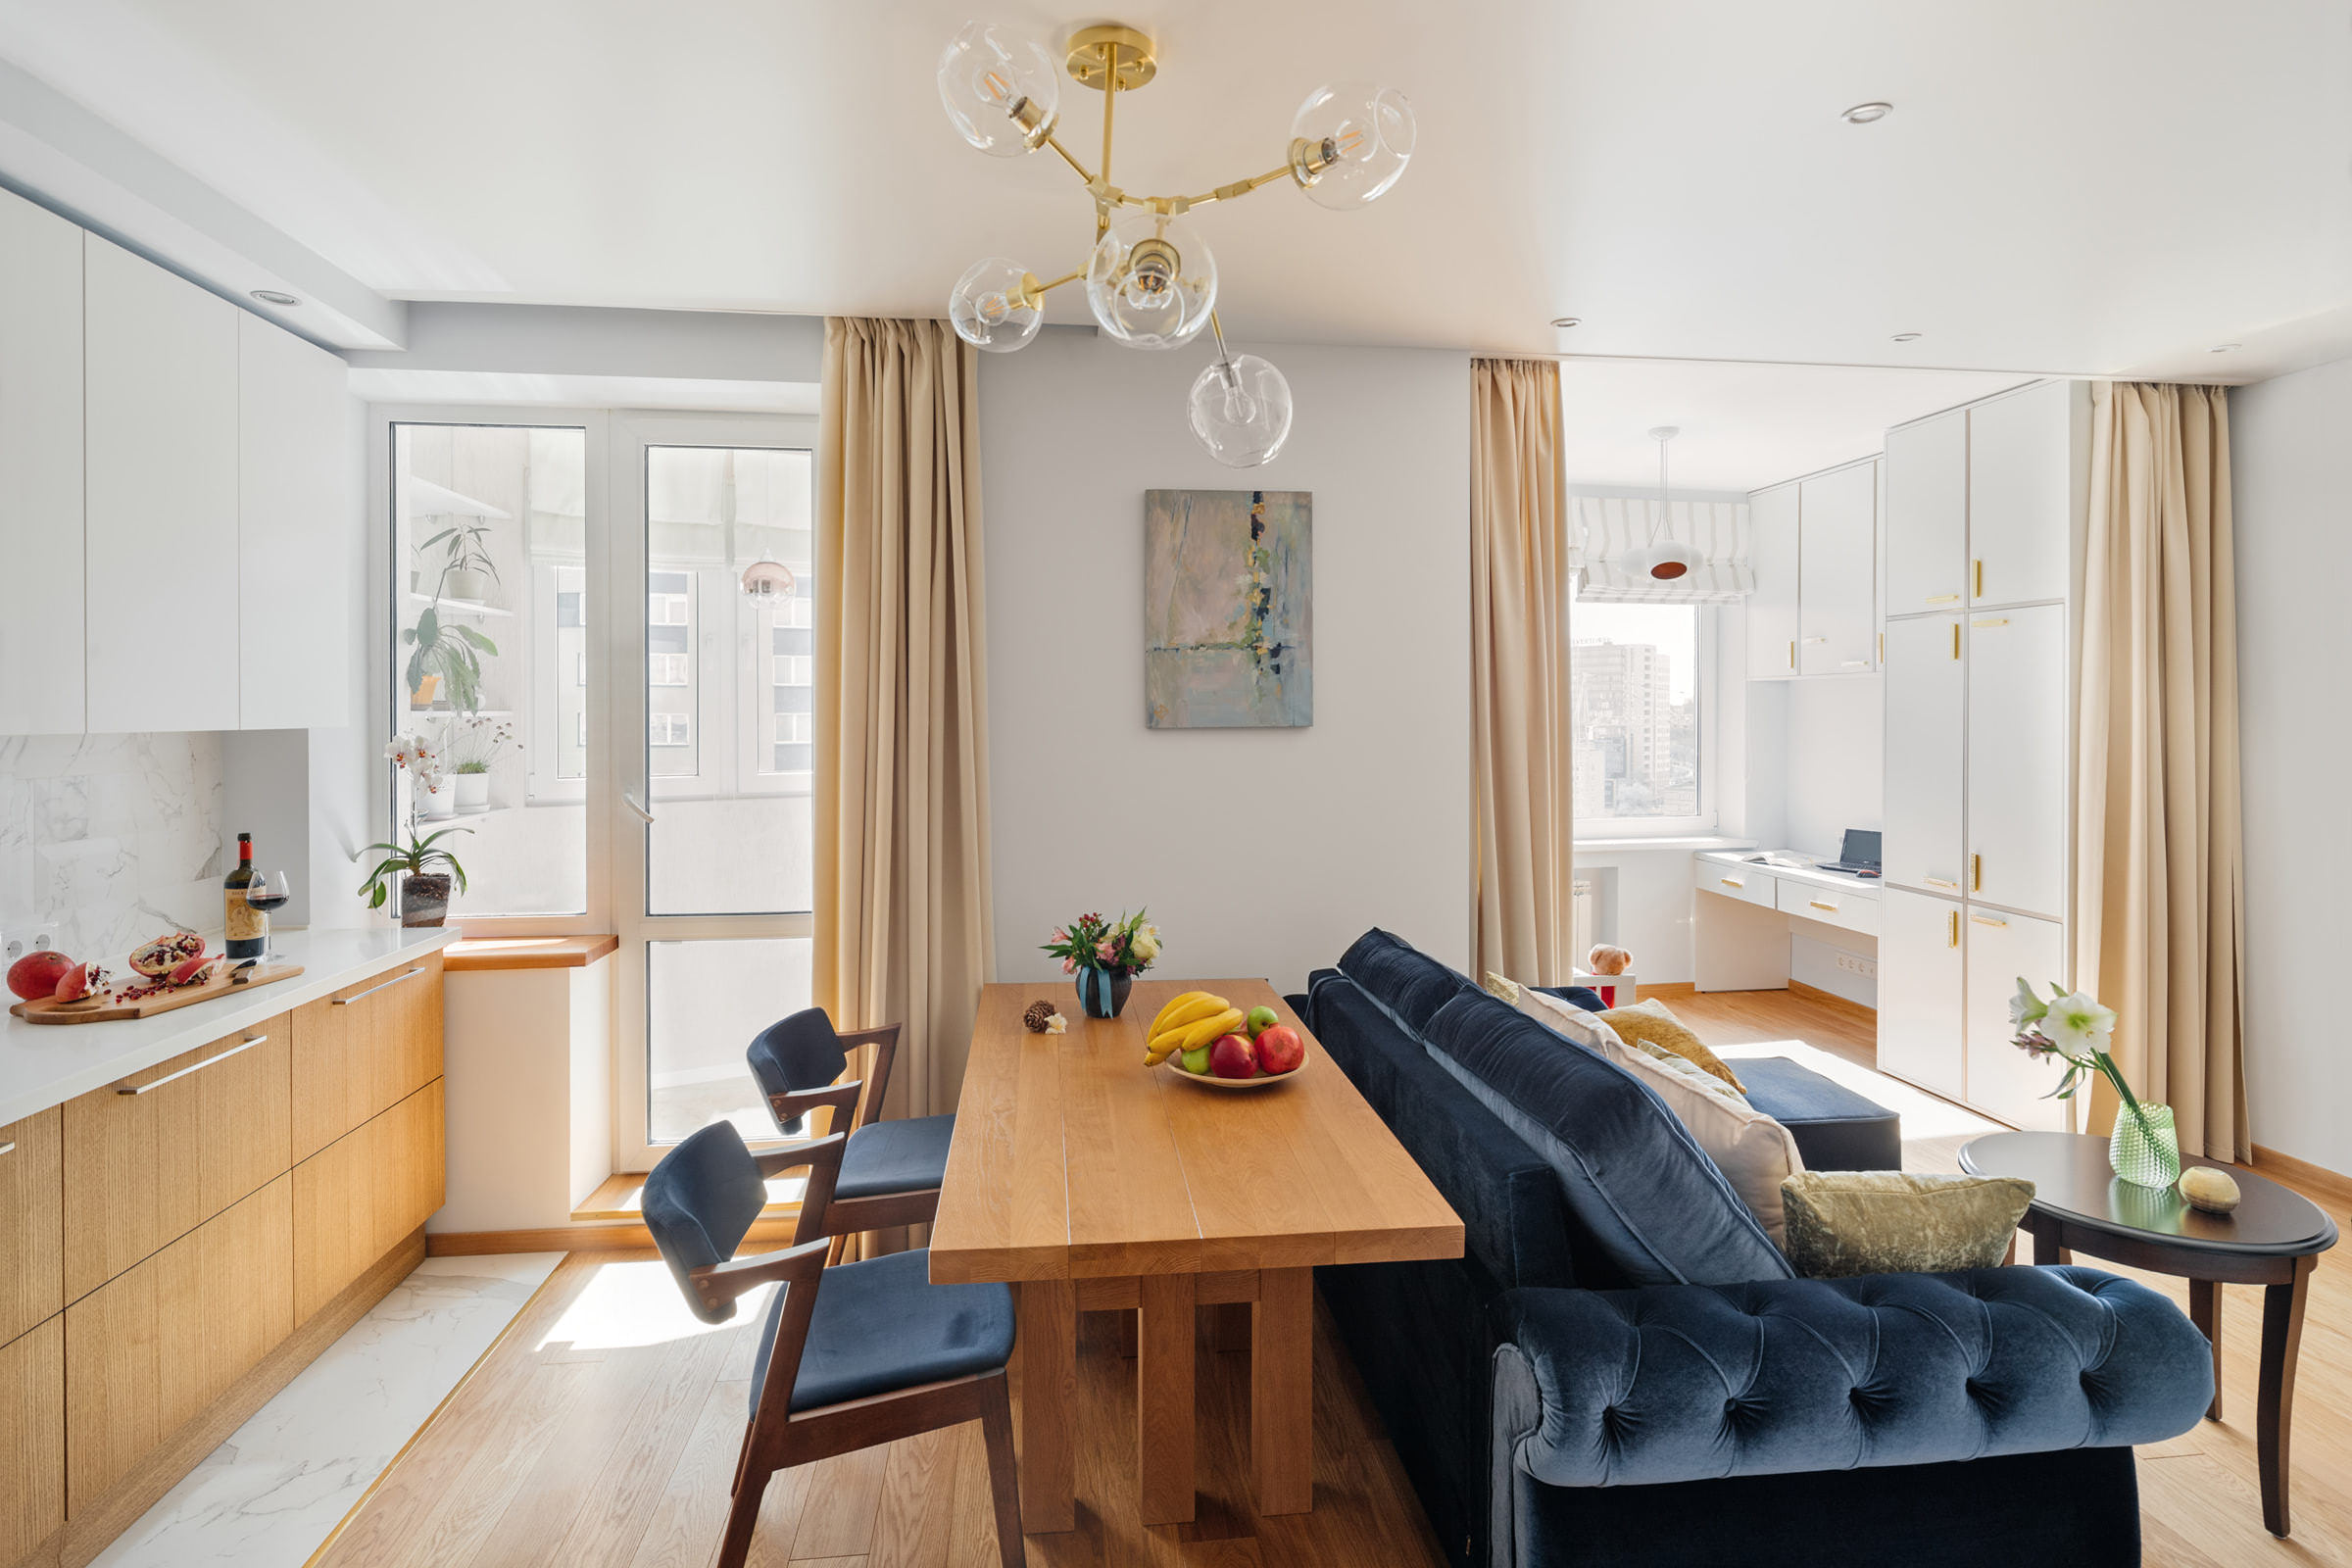 Светлый интерьер кухни с мебелью в двухкомнатной квартире-студии, фотосъёмка для портфолио дизайнера-архитектора в Минске